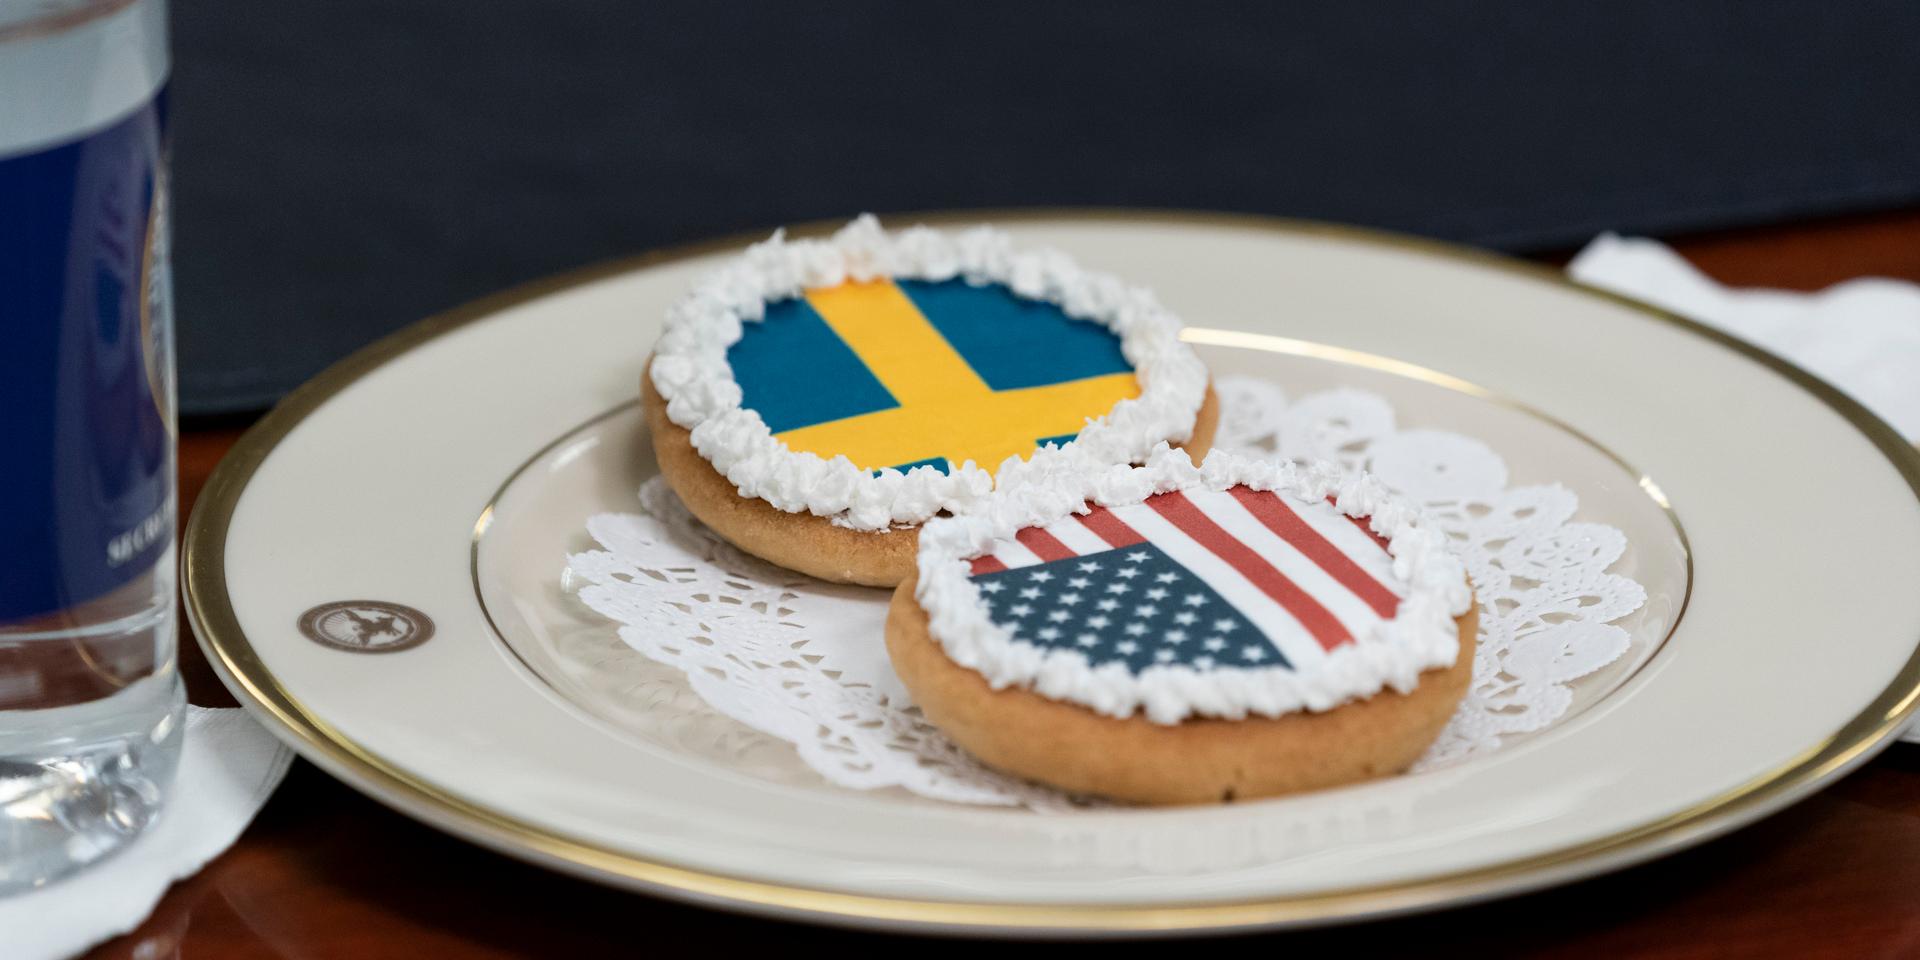 Sveriges och USA:s flaggor avbildade på kakor vid onsdagens möte i Pentagon.